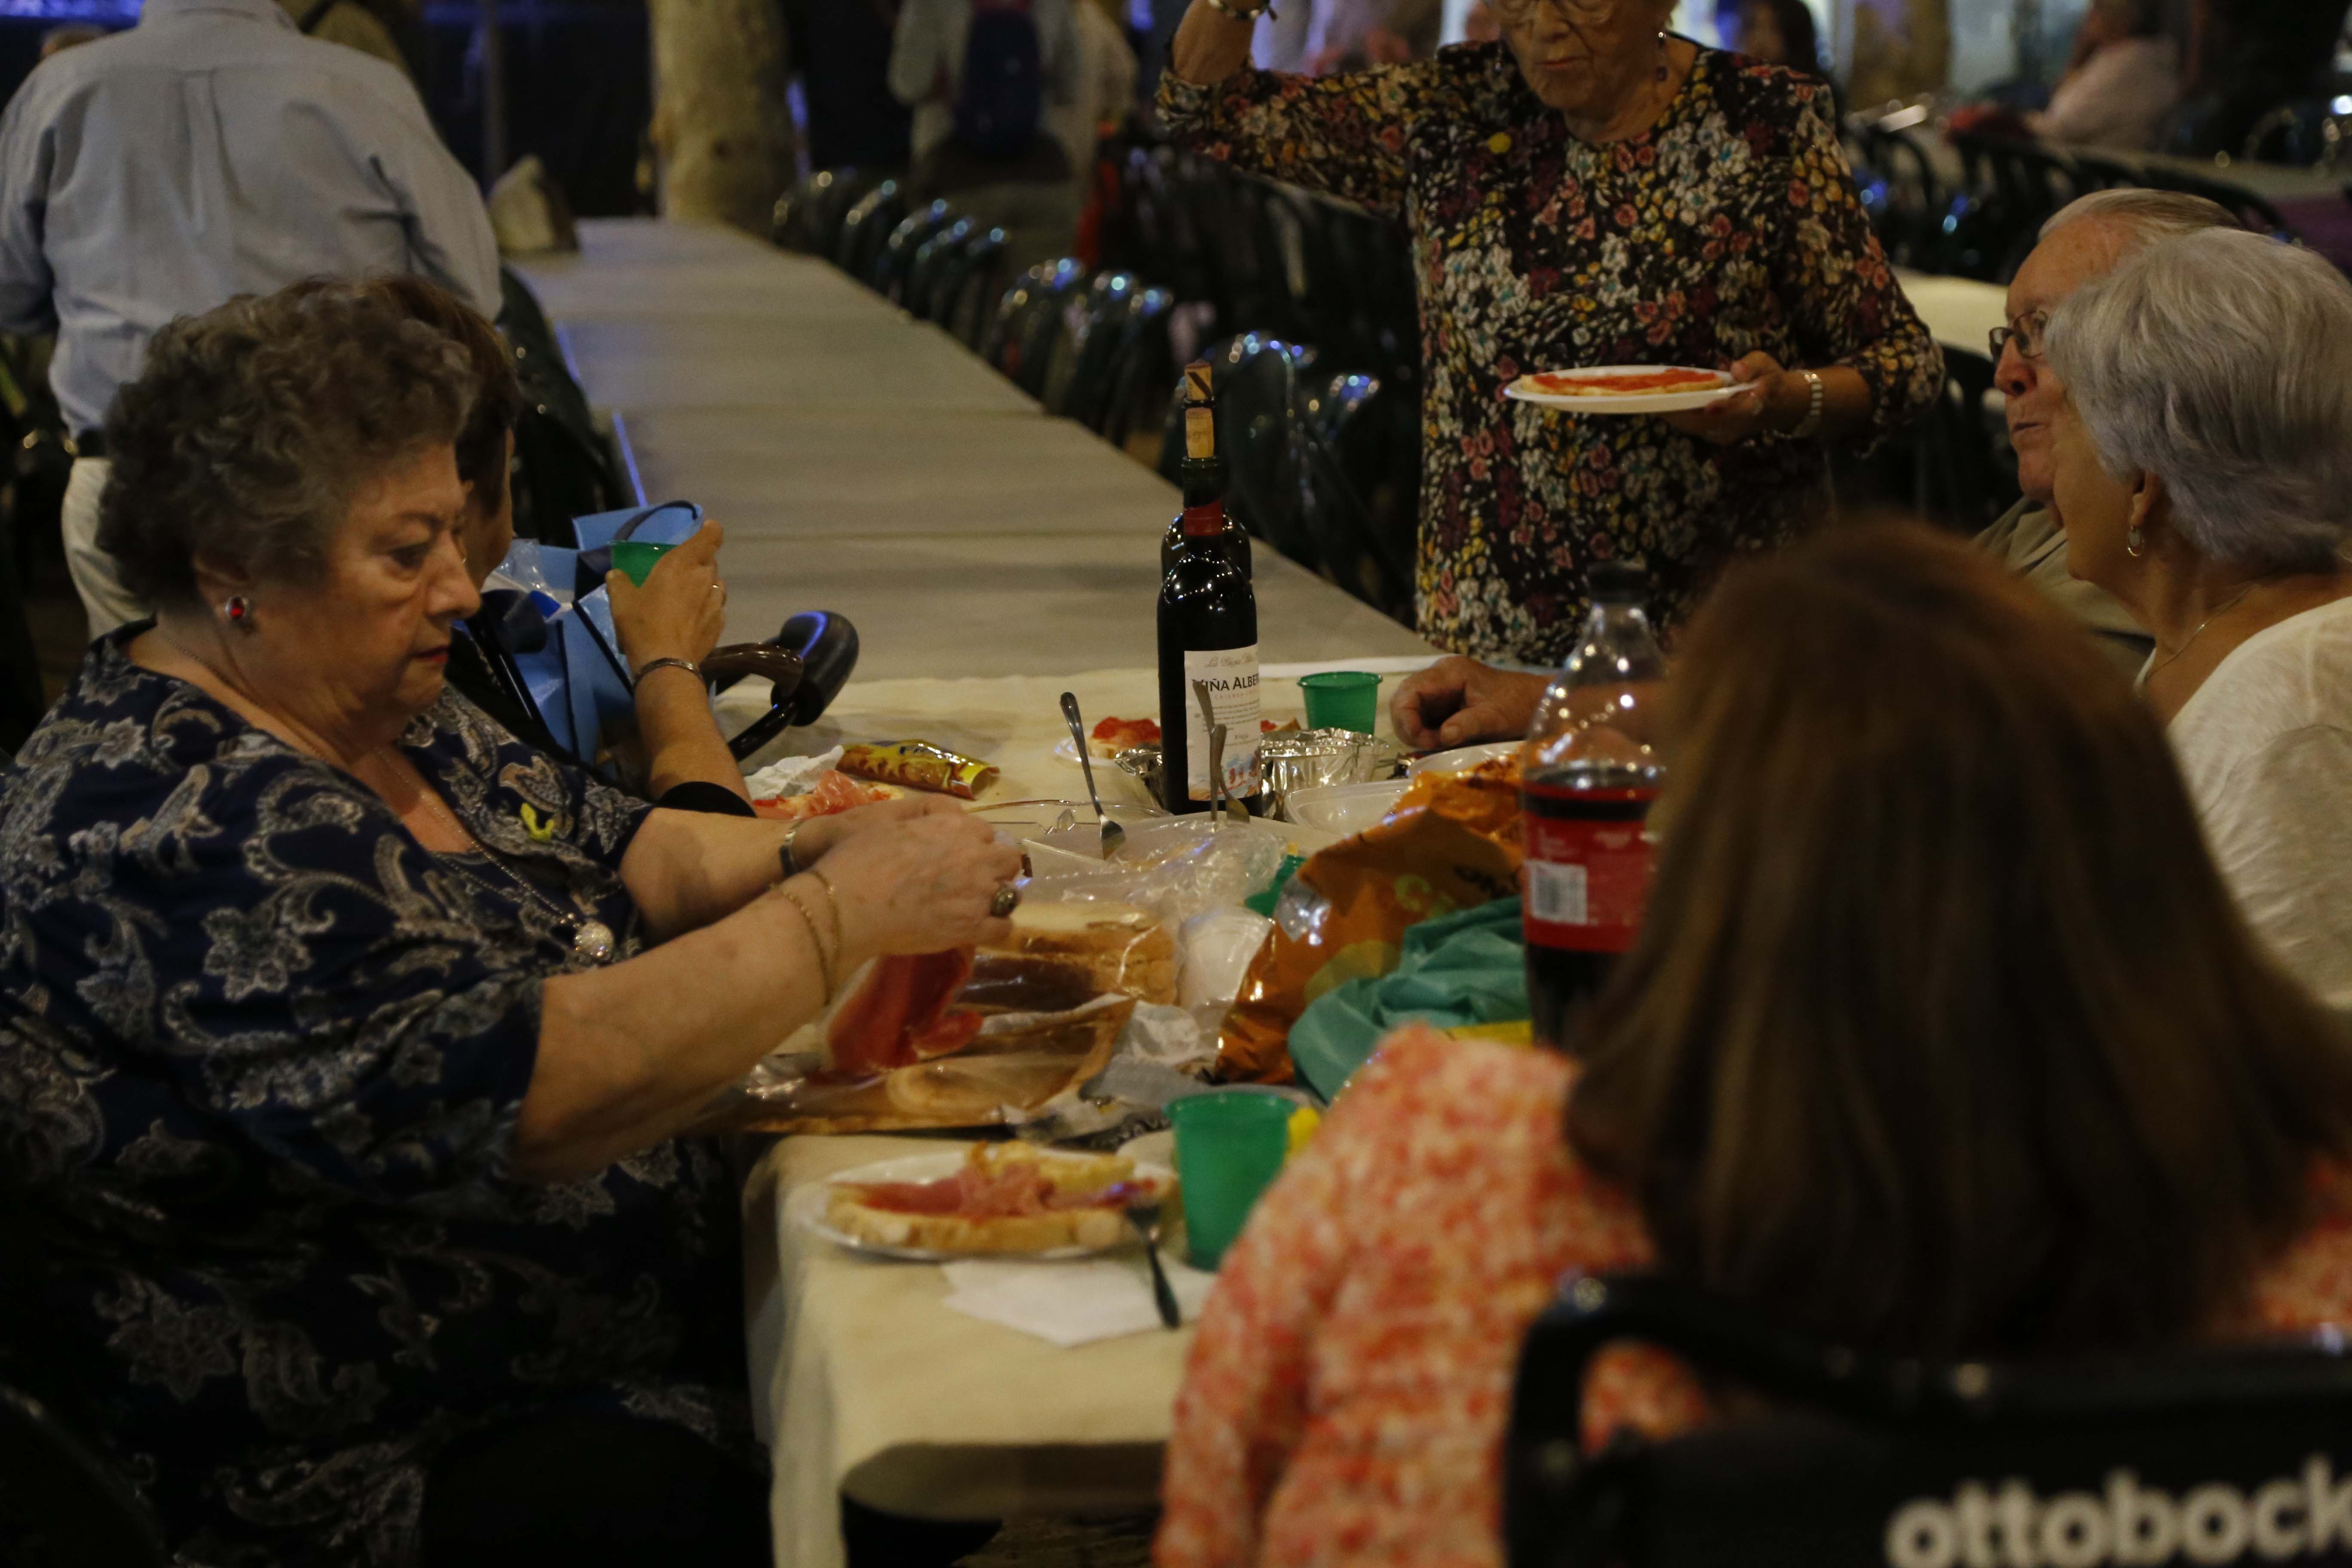 Sopar de carmanyola a la Festa Major del barri del Monestir- Sant Francesc. FOTO: Anna Bassa